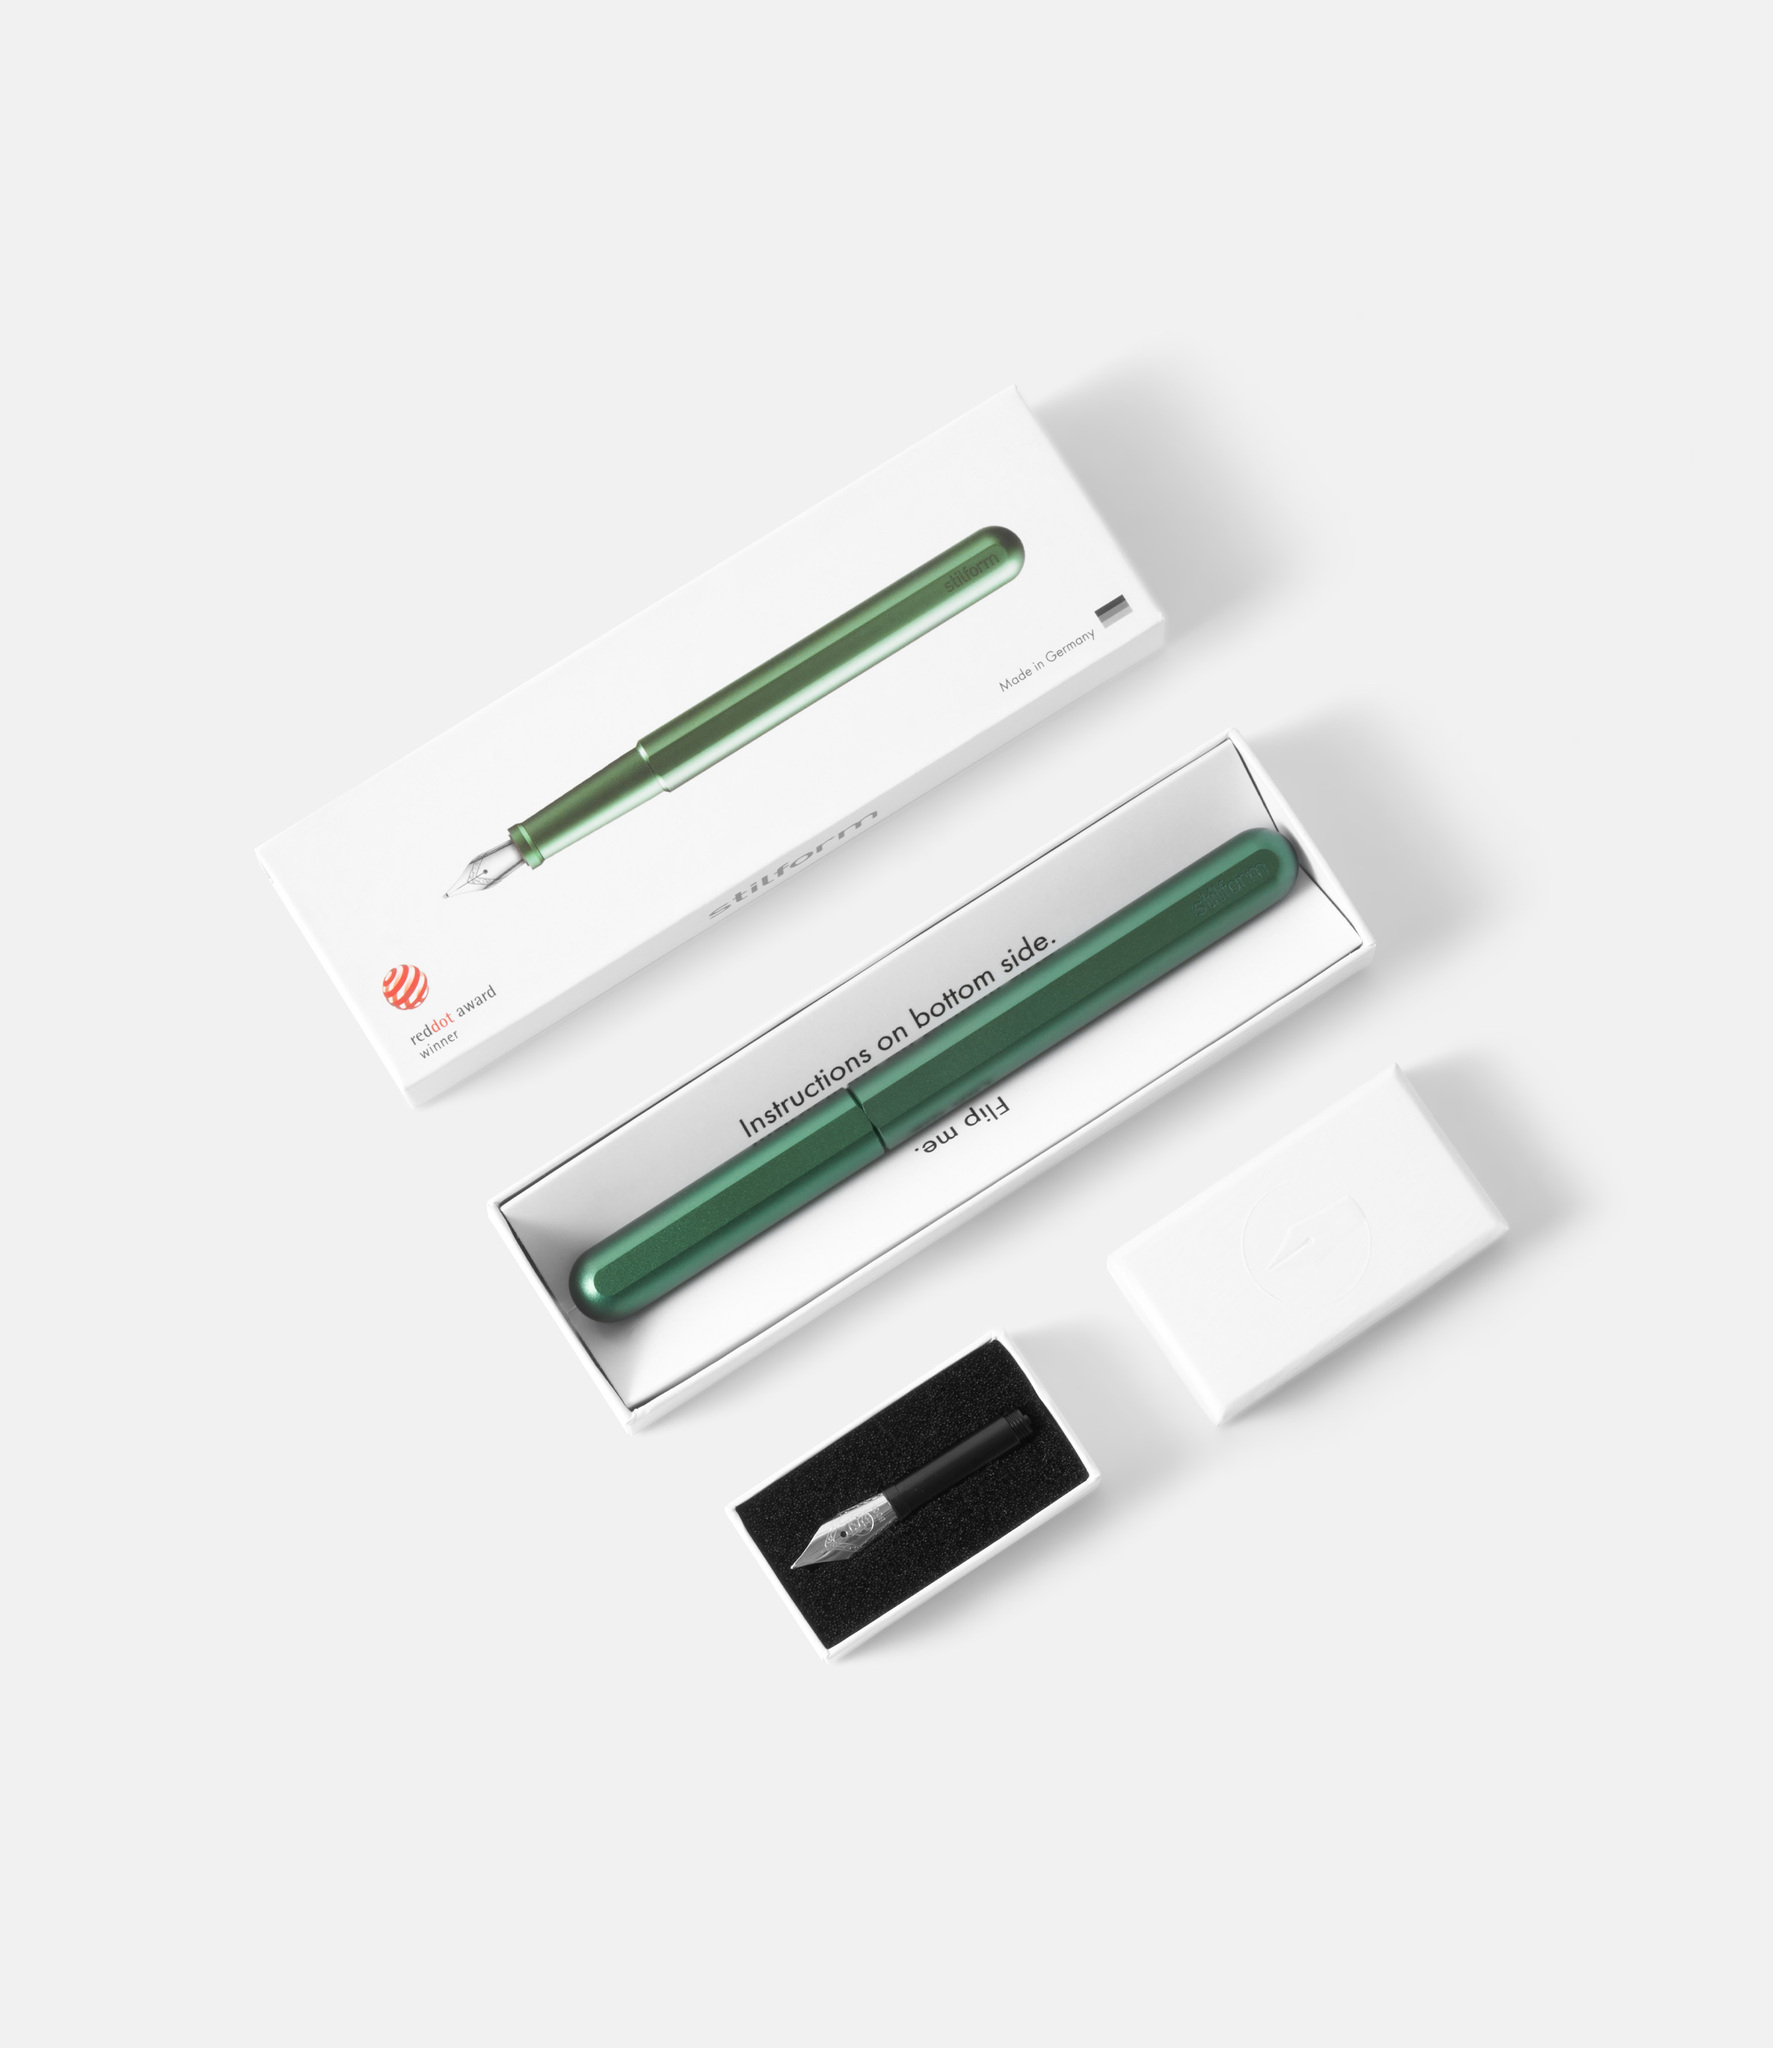 Stilform Ink Aurora Green — перьевая ручка из алюминия